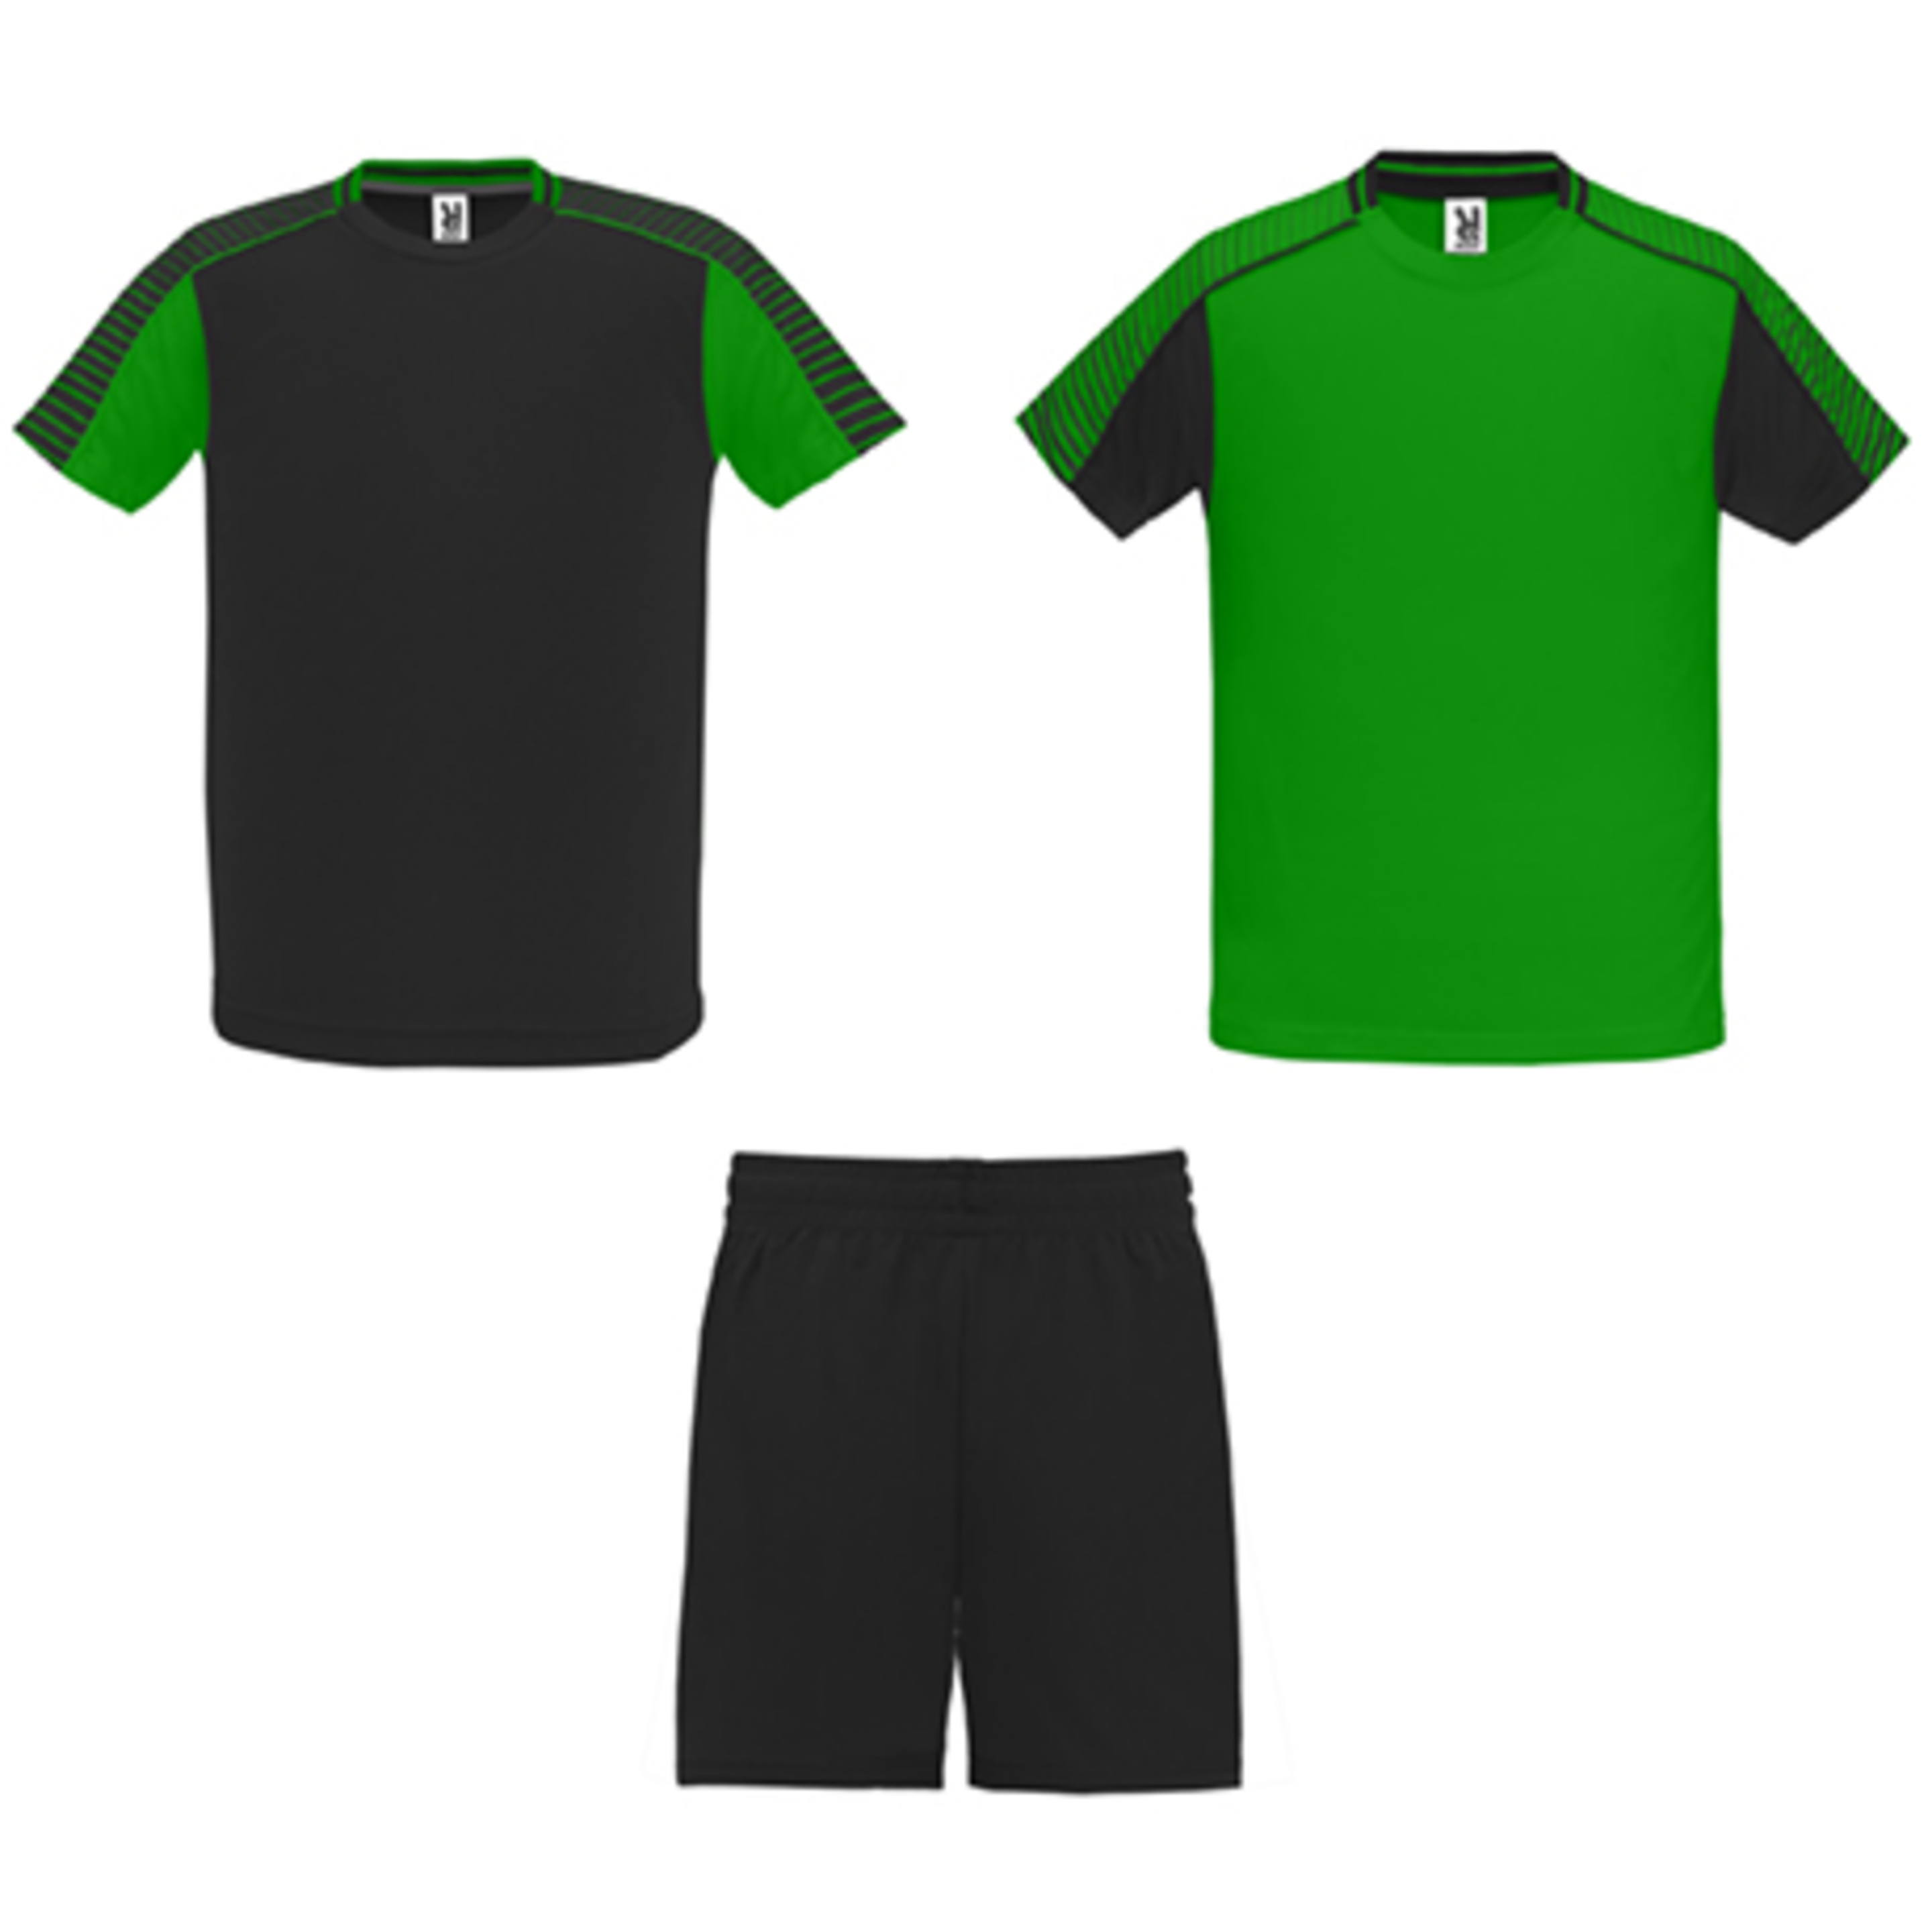 Conjunto Deportivo Juve Kid Compuesto Por 2 Camisetas Y 1 Pantalón.